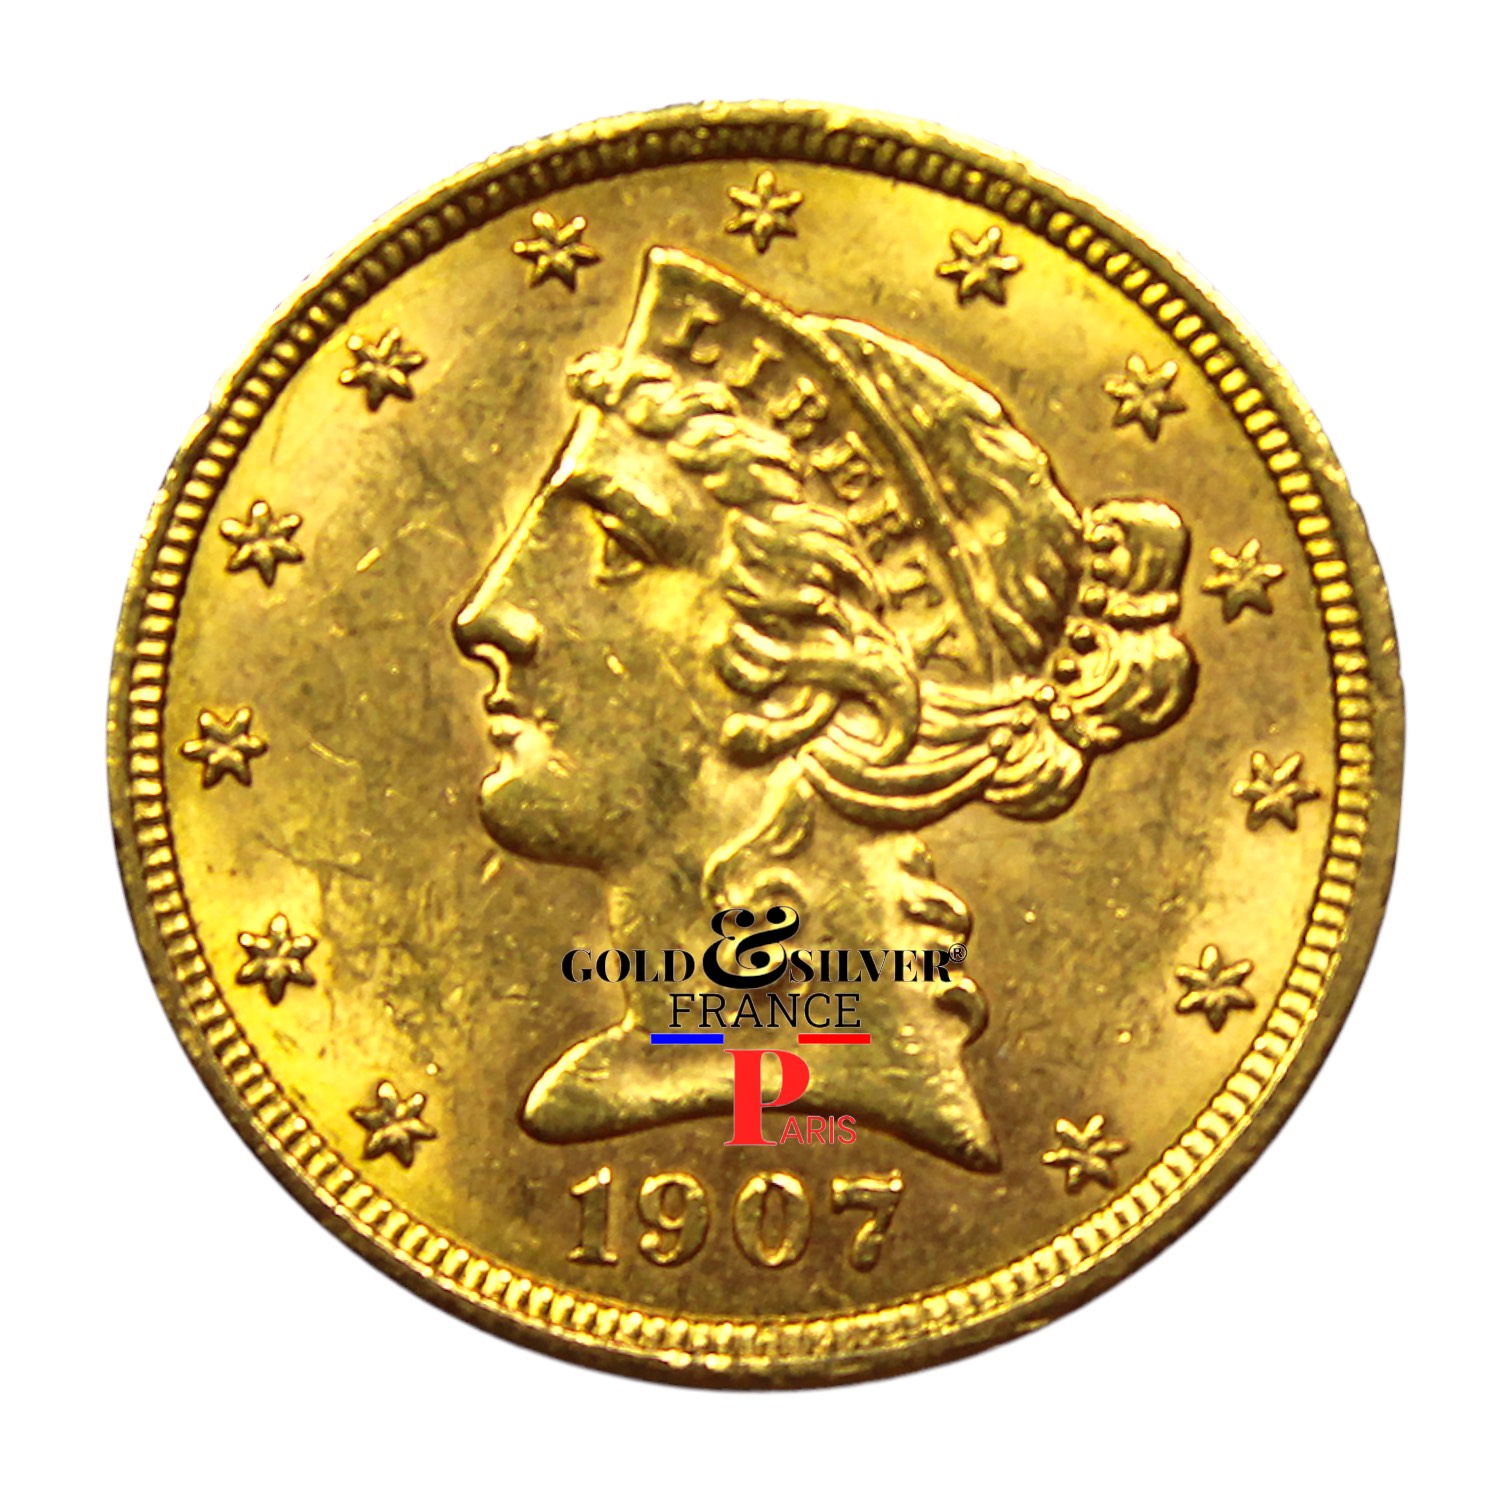 Acheter de l'Or et de l'Argent en France au Meilleur Prix. Investir en toute sécurité. https://goldsilverfranceparis.com/